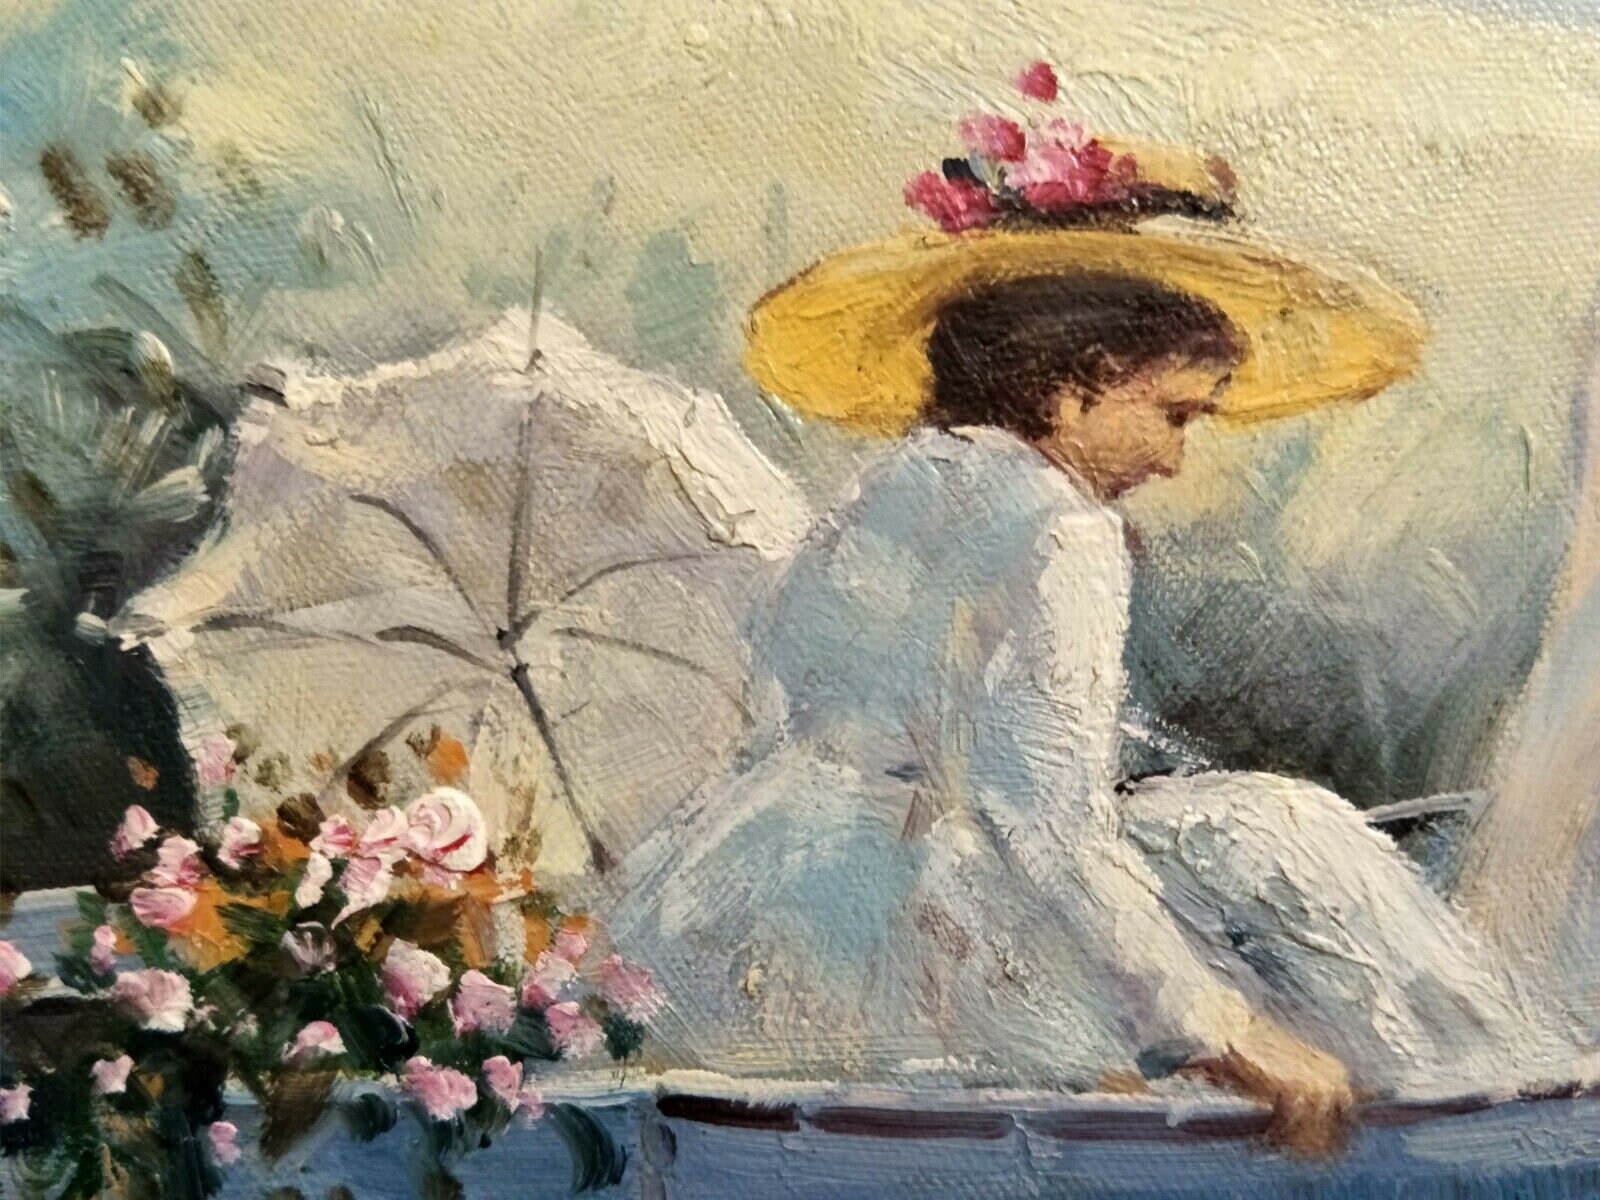 Tableau portrait sur toile femme peinture turquoise rose